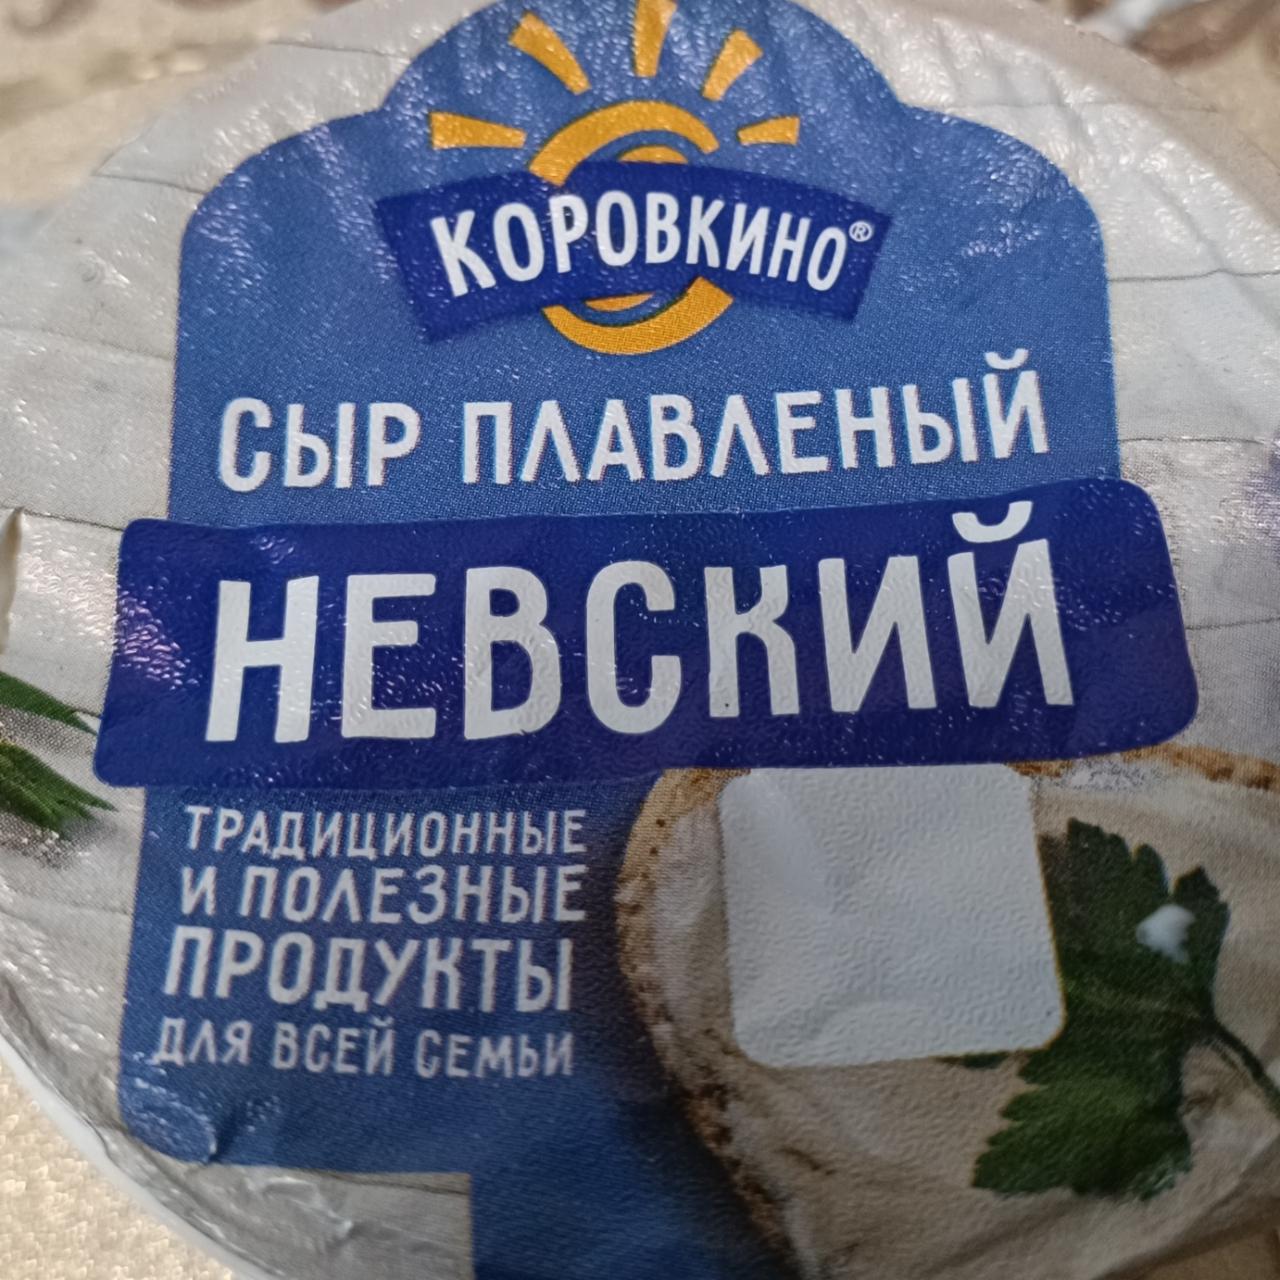 Фото - Сыр плавленный невский Коровкино